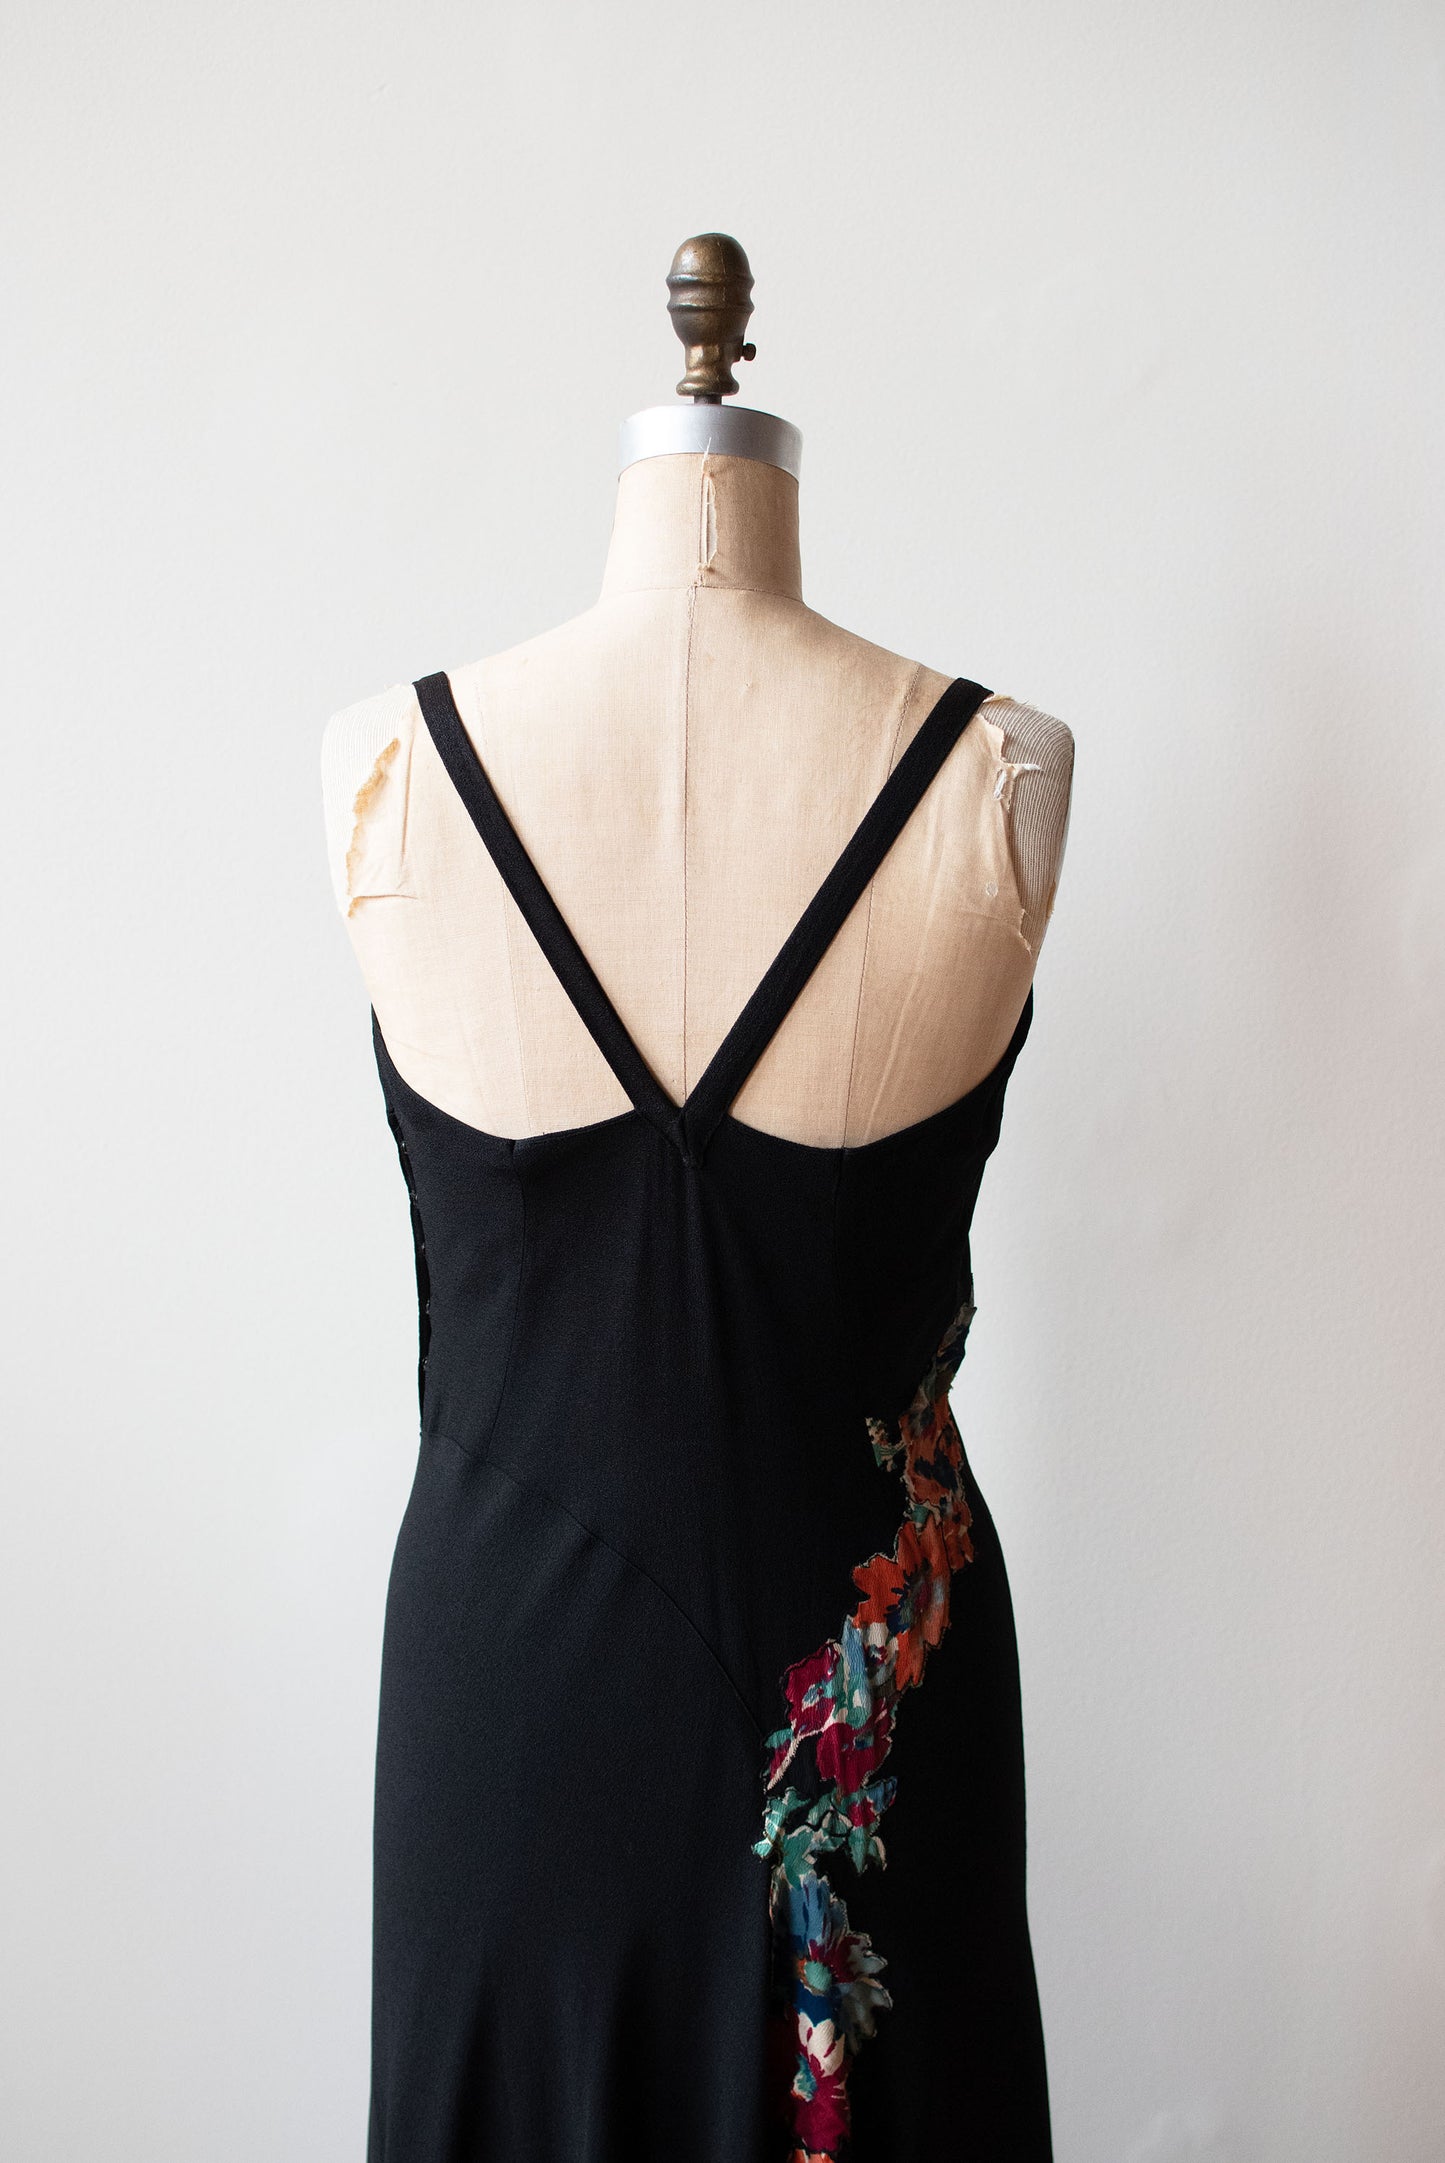 1930s Black Applique Dress